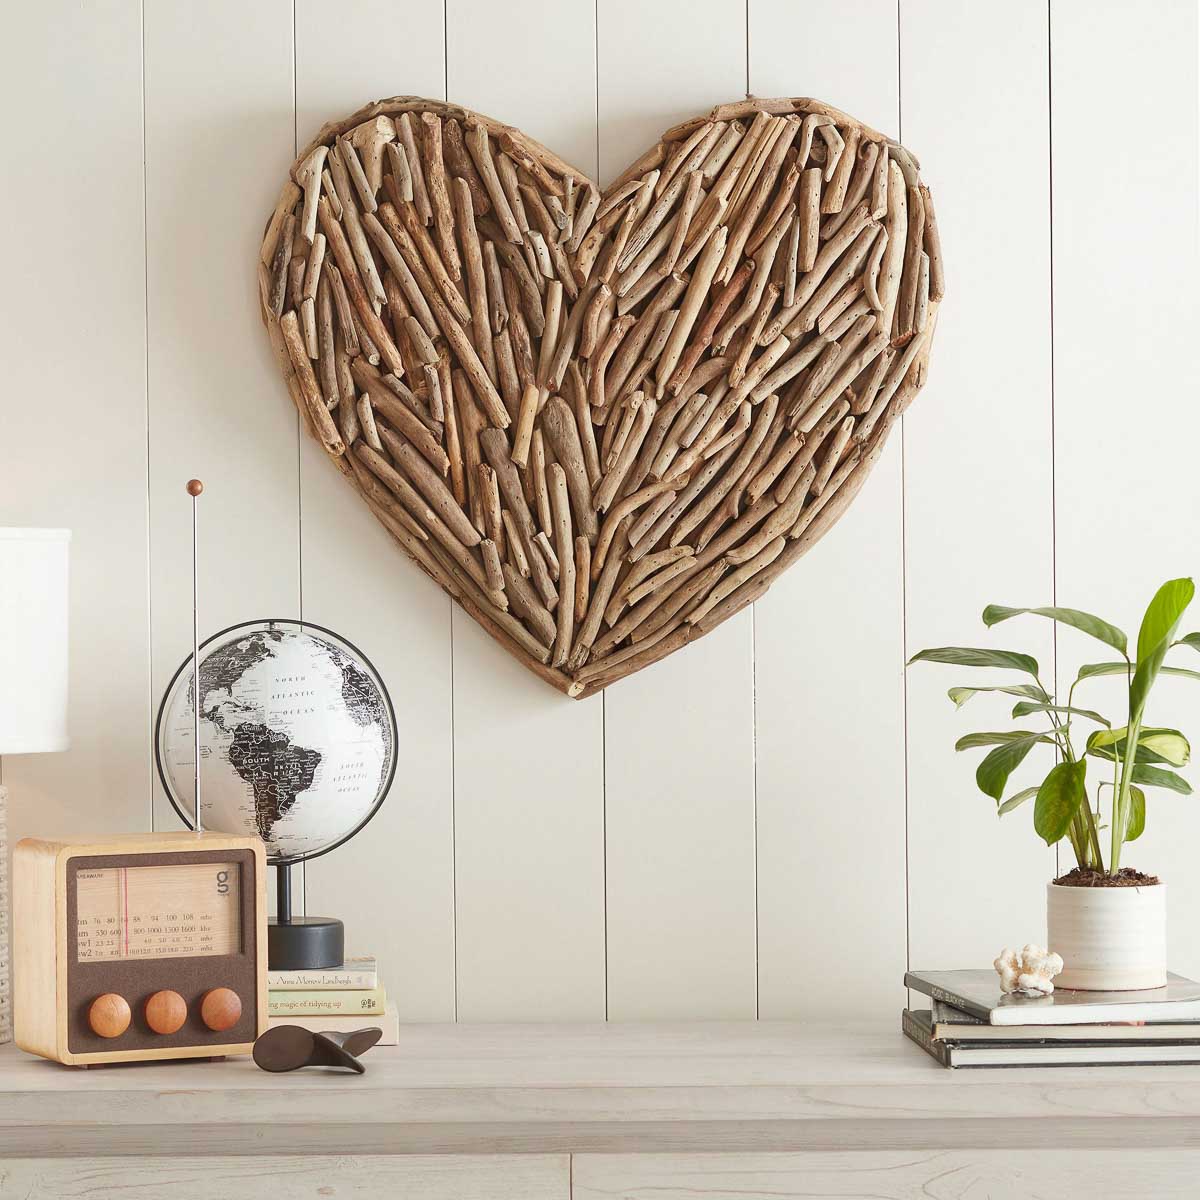 Driftwood heart wall decor